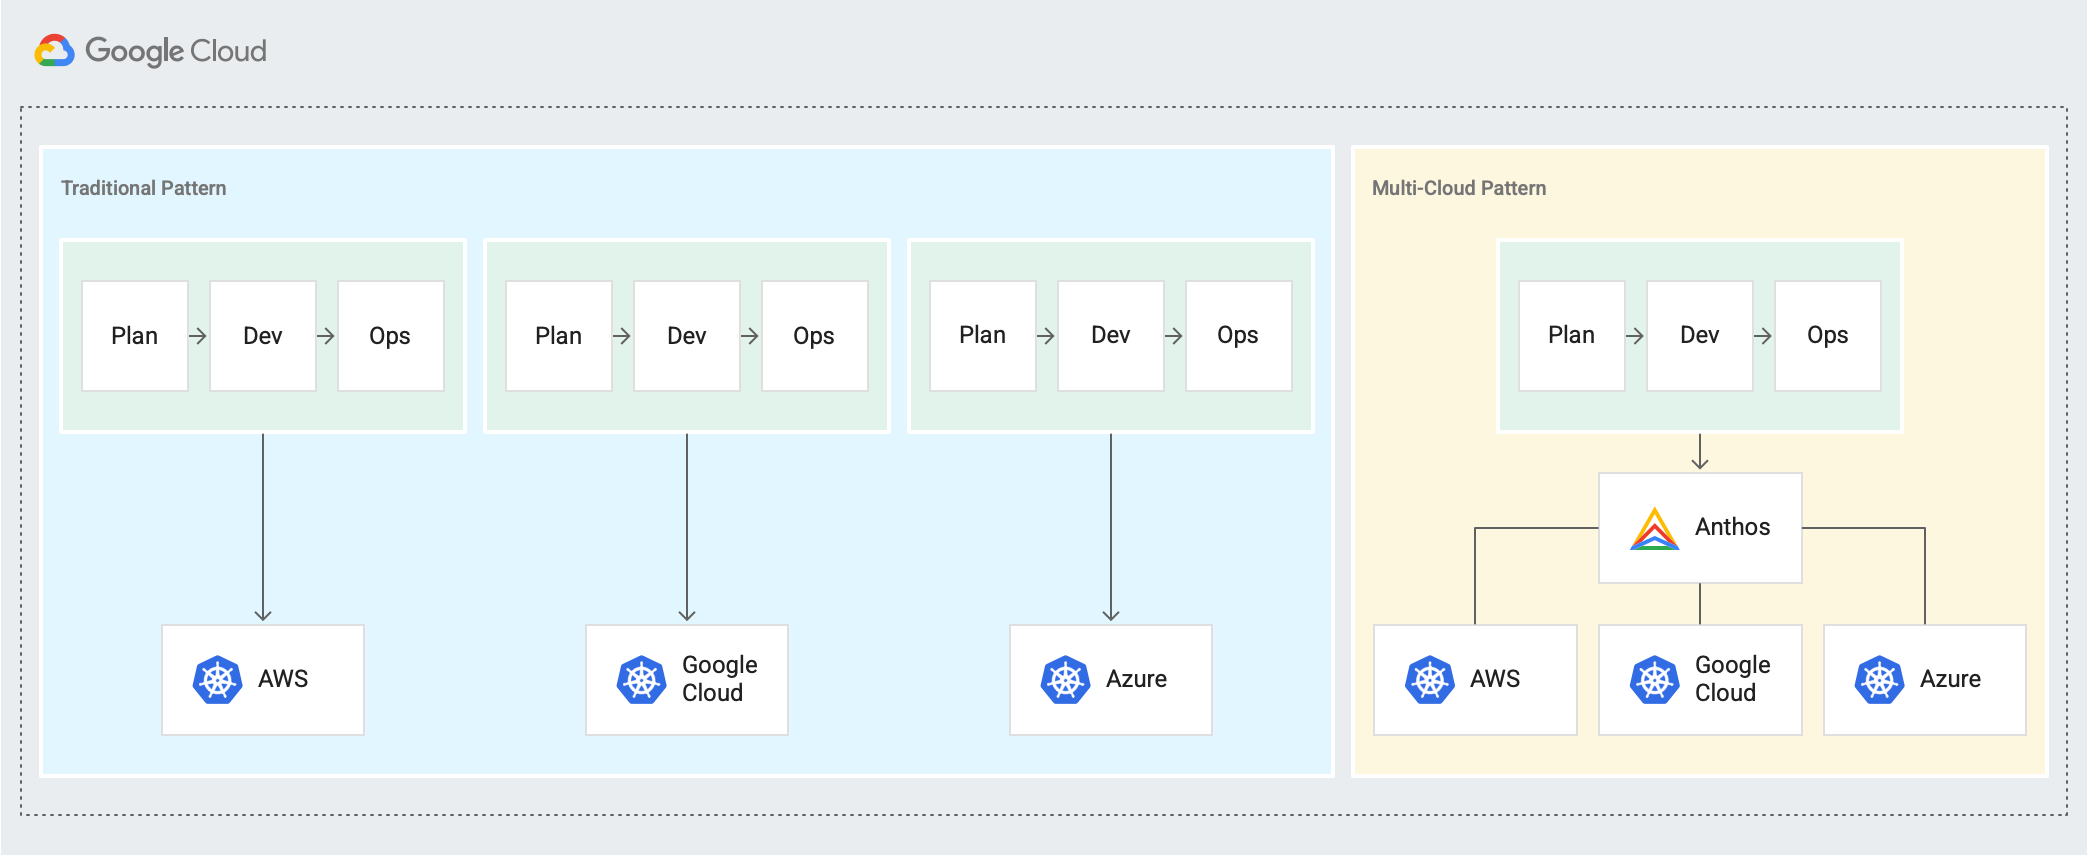 Zeigt ein traditionelles Muster mit separatem Plan → Entwickeln → Betriebszyklen für AWS, Google Cloud und Azure sowie ein neues Multi-Cloud-Muster, bei dem Plan → Entwickeln → Betriebszyklen über Anthos verbunden sind.